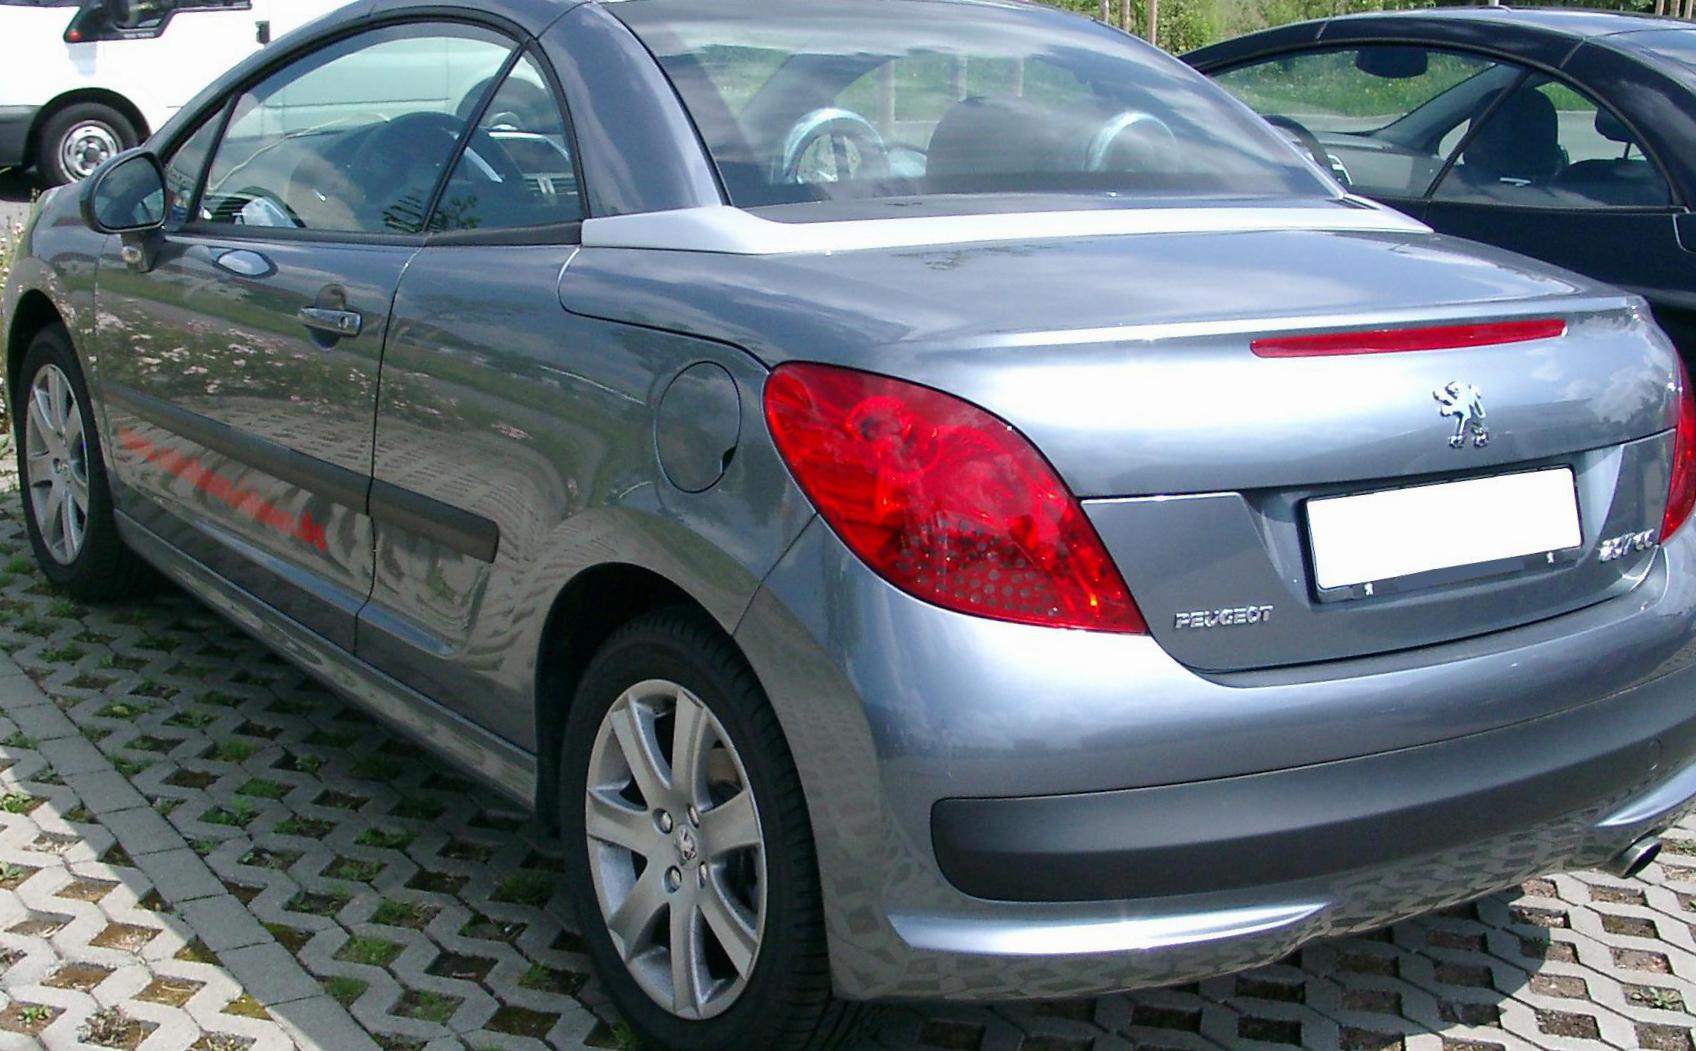 207 CC Peugeot model 2005